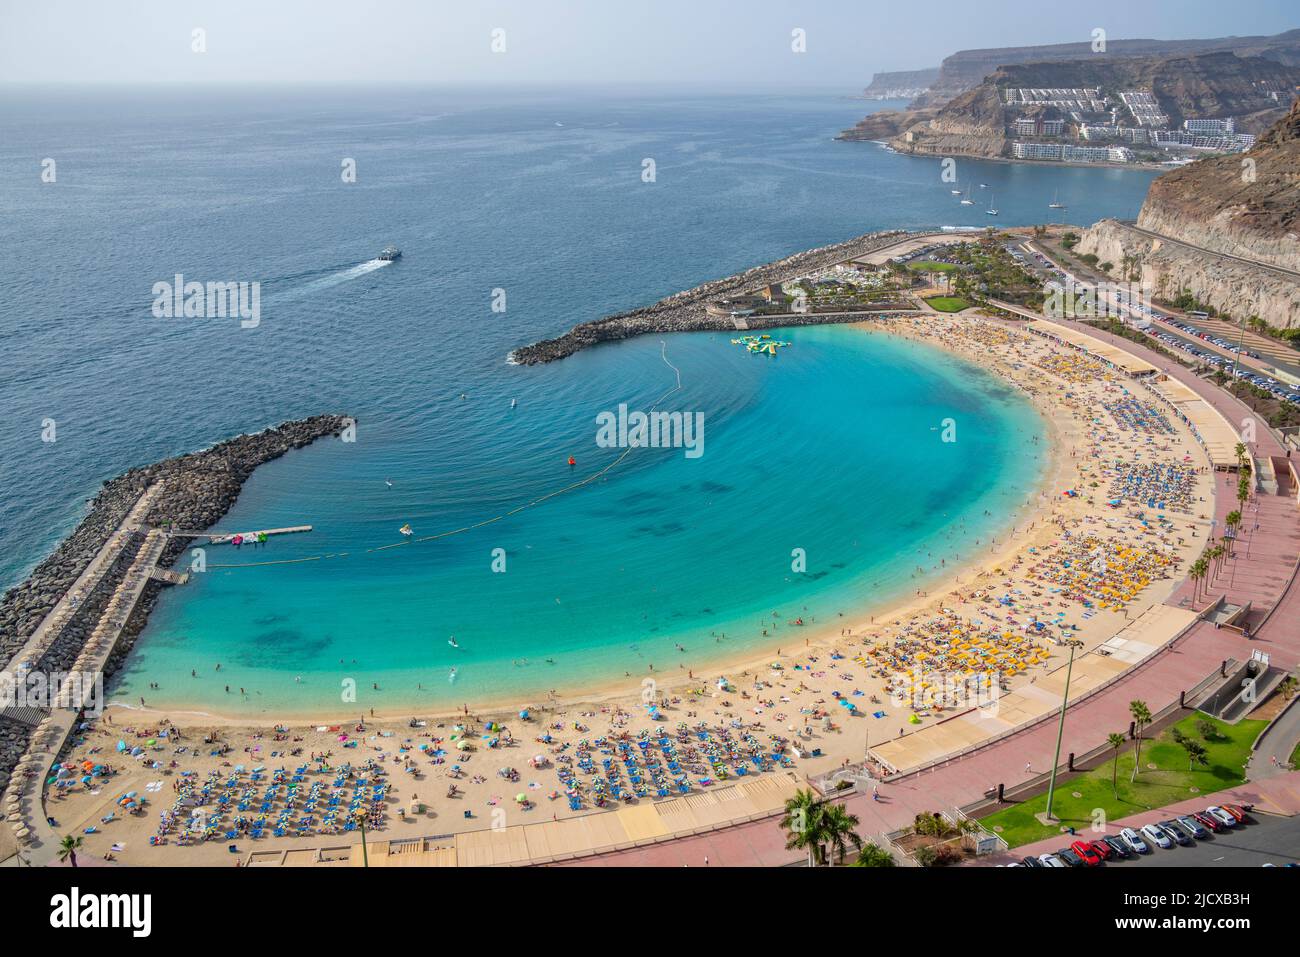 Vista della spiaggia di Playa de Amadores dalla posizione elevata, Puerto Rico, Gran Canaria, Isole Canarie, Spagna, Atlantico, Europa Foto Stock